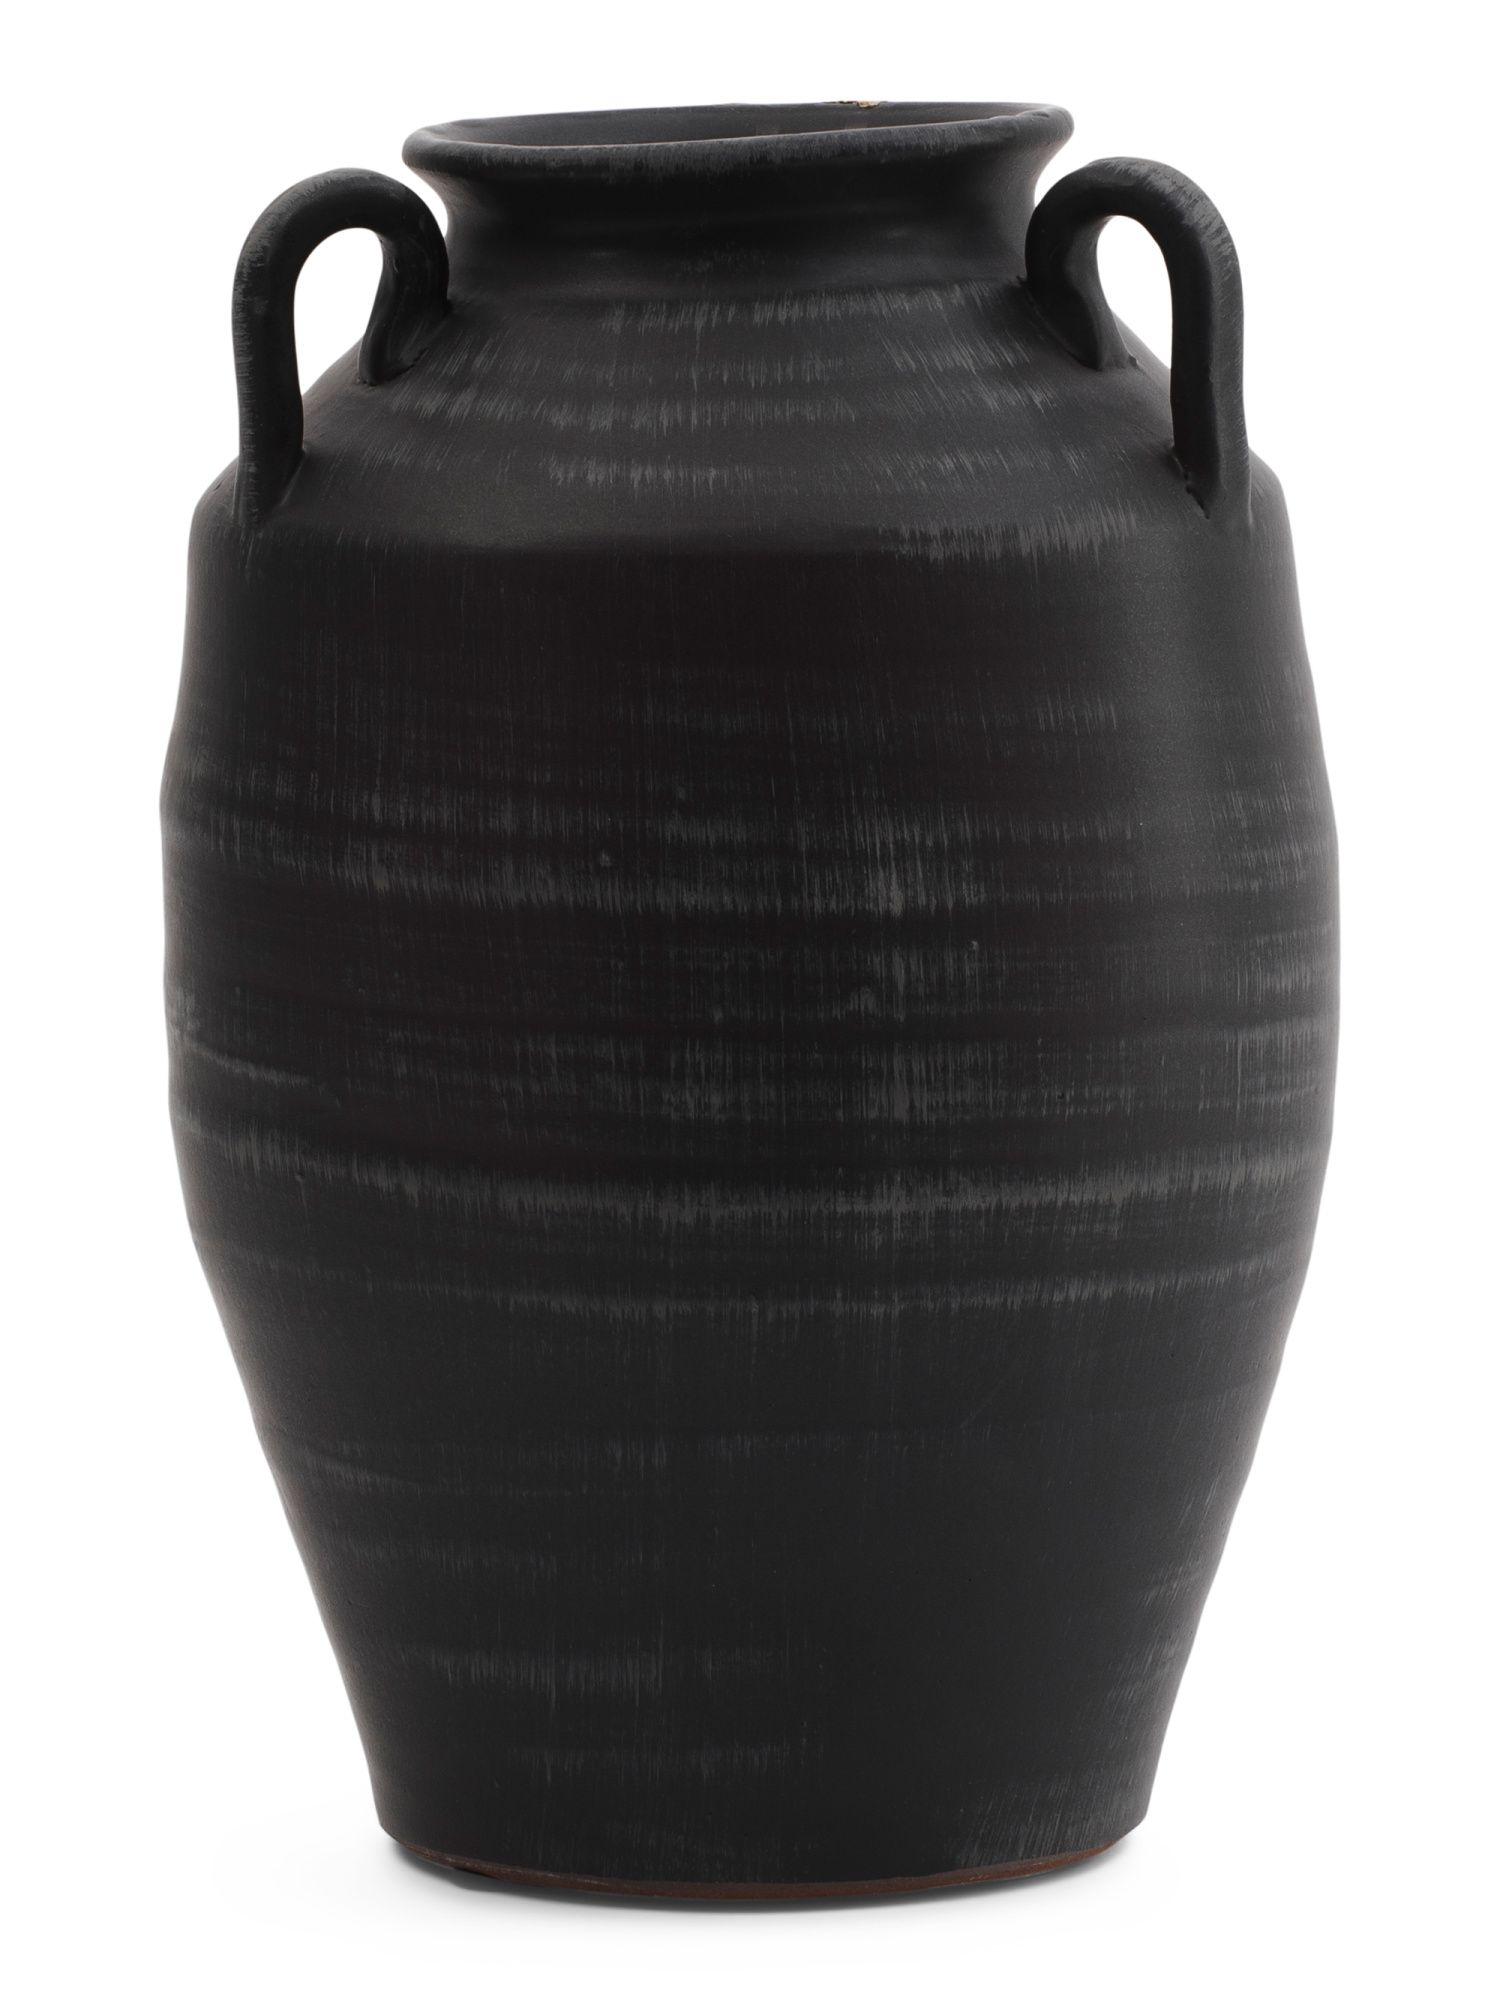 14in 3 Handle Ceramic Vase | TJ Maxx